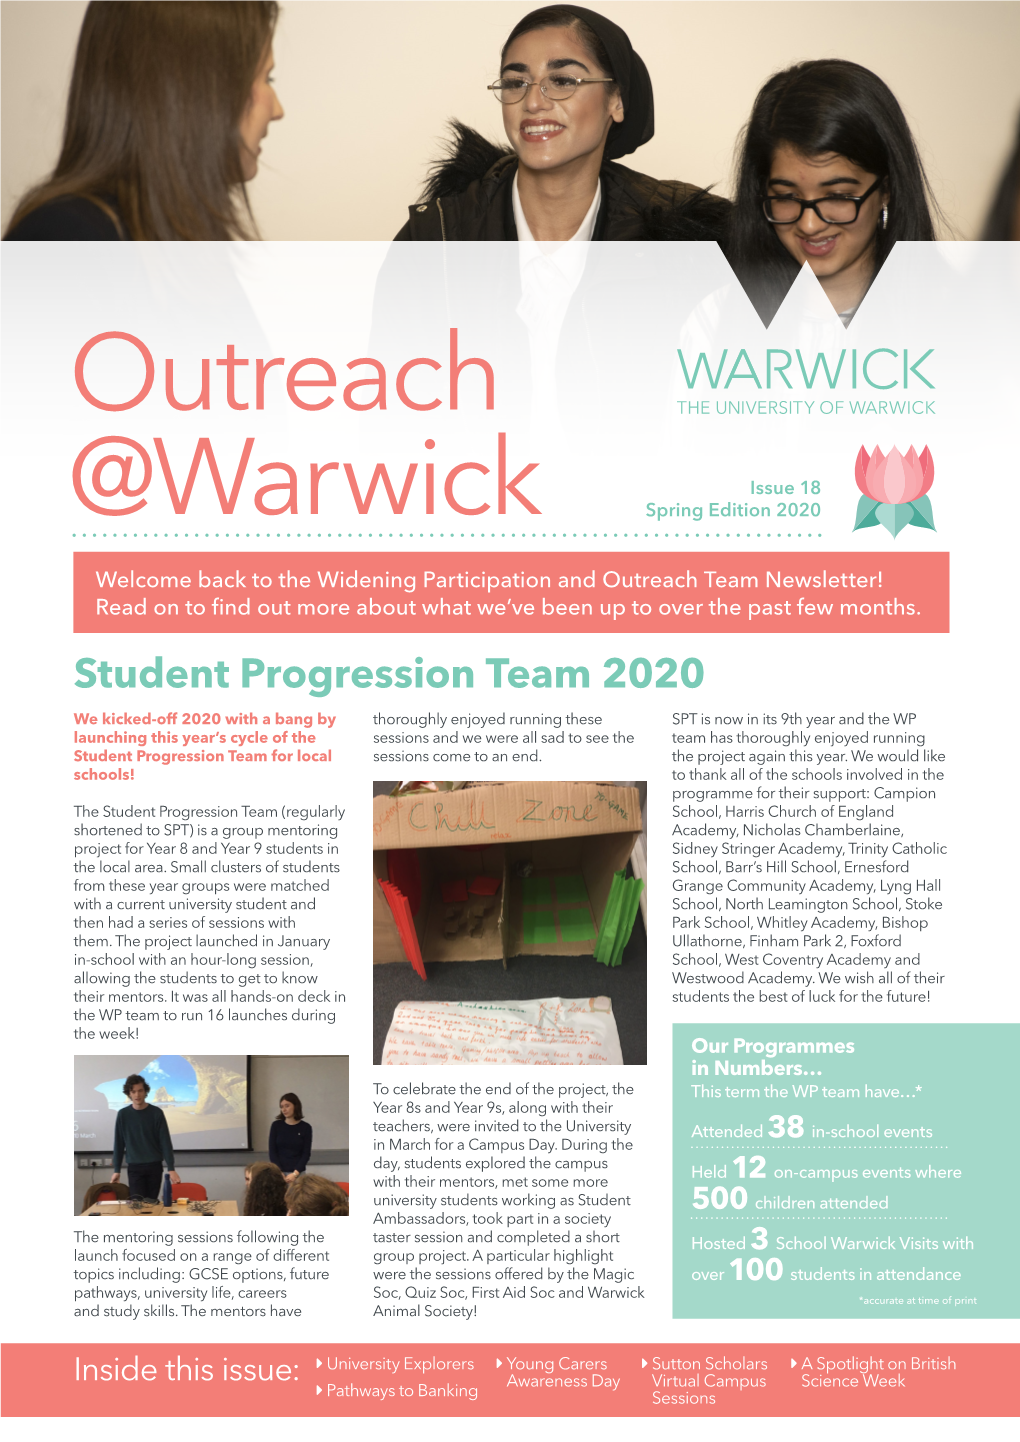 Outreach @Warwick